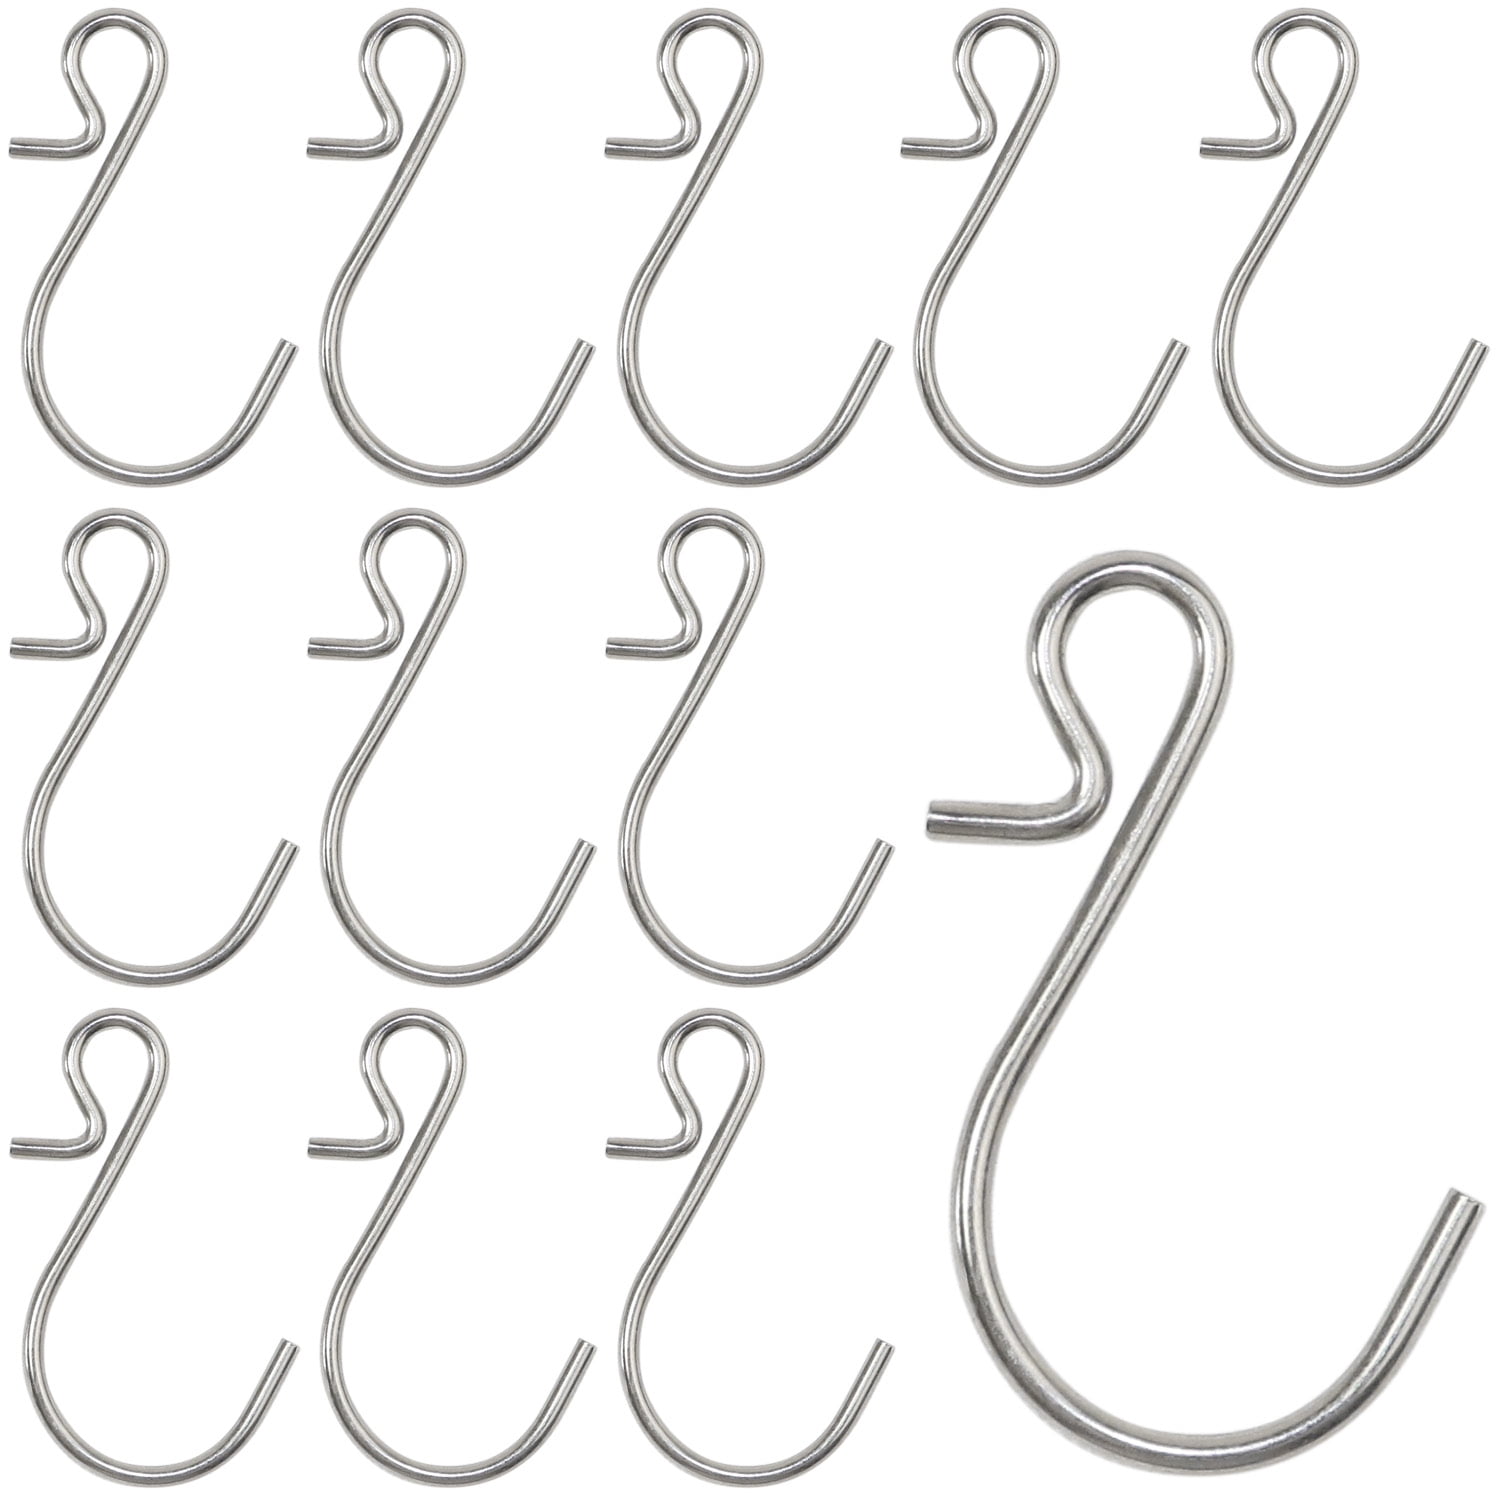 60 Pcs 1.5" inch Small Zinc Plated Steel S Shape Type Utility Hooks Hangers Hook 